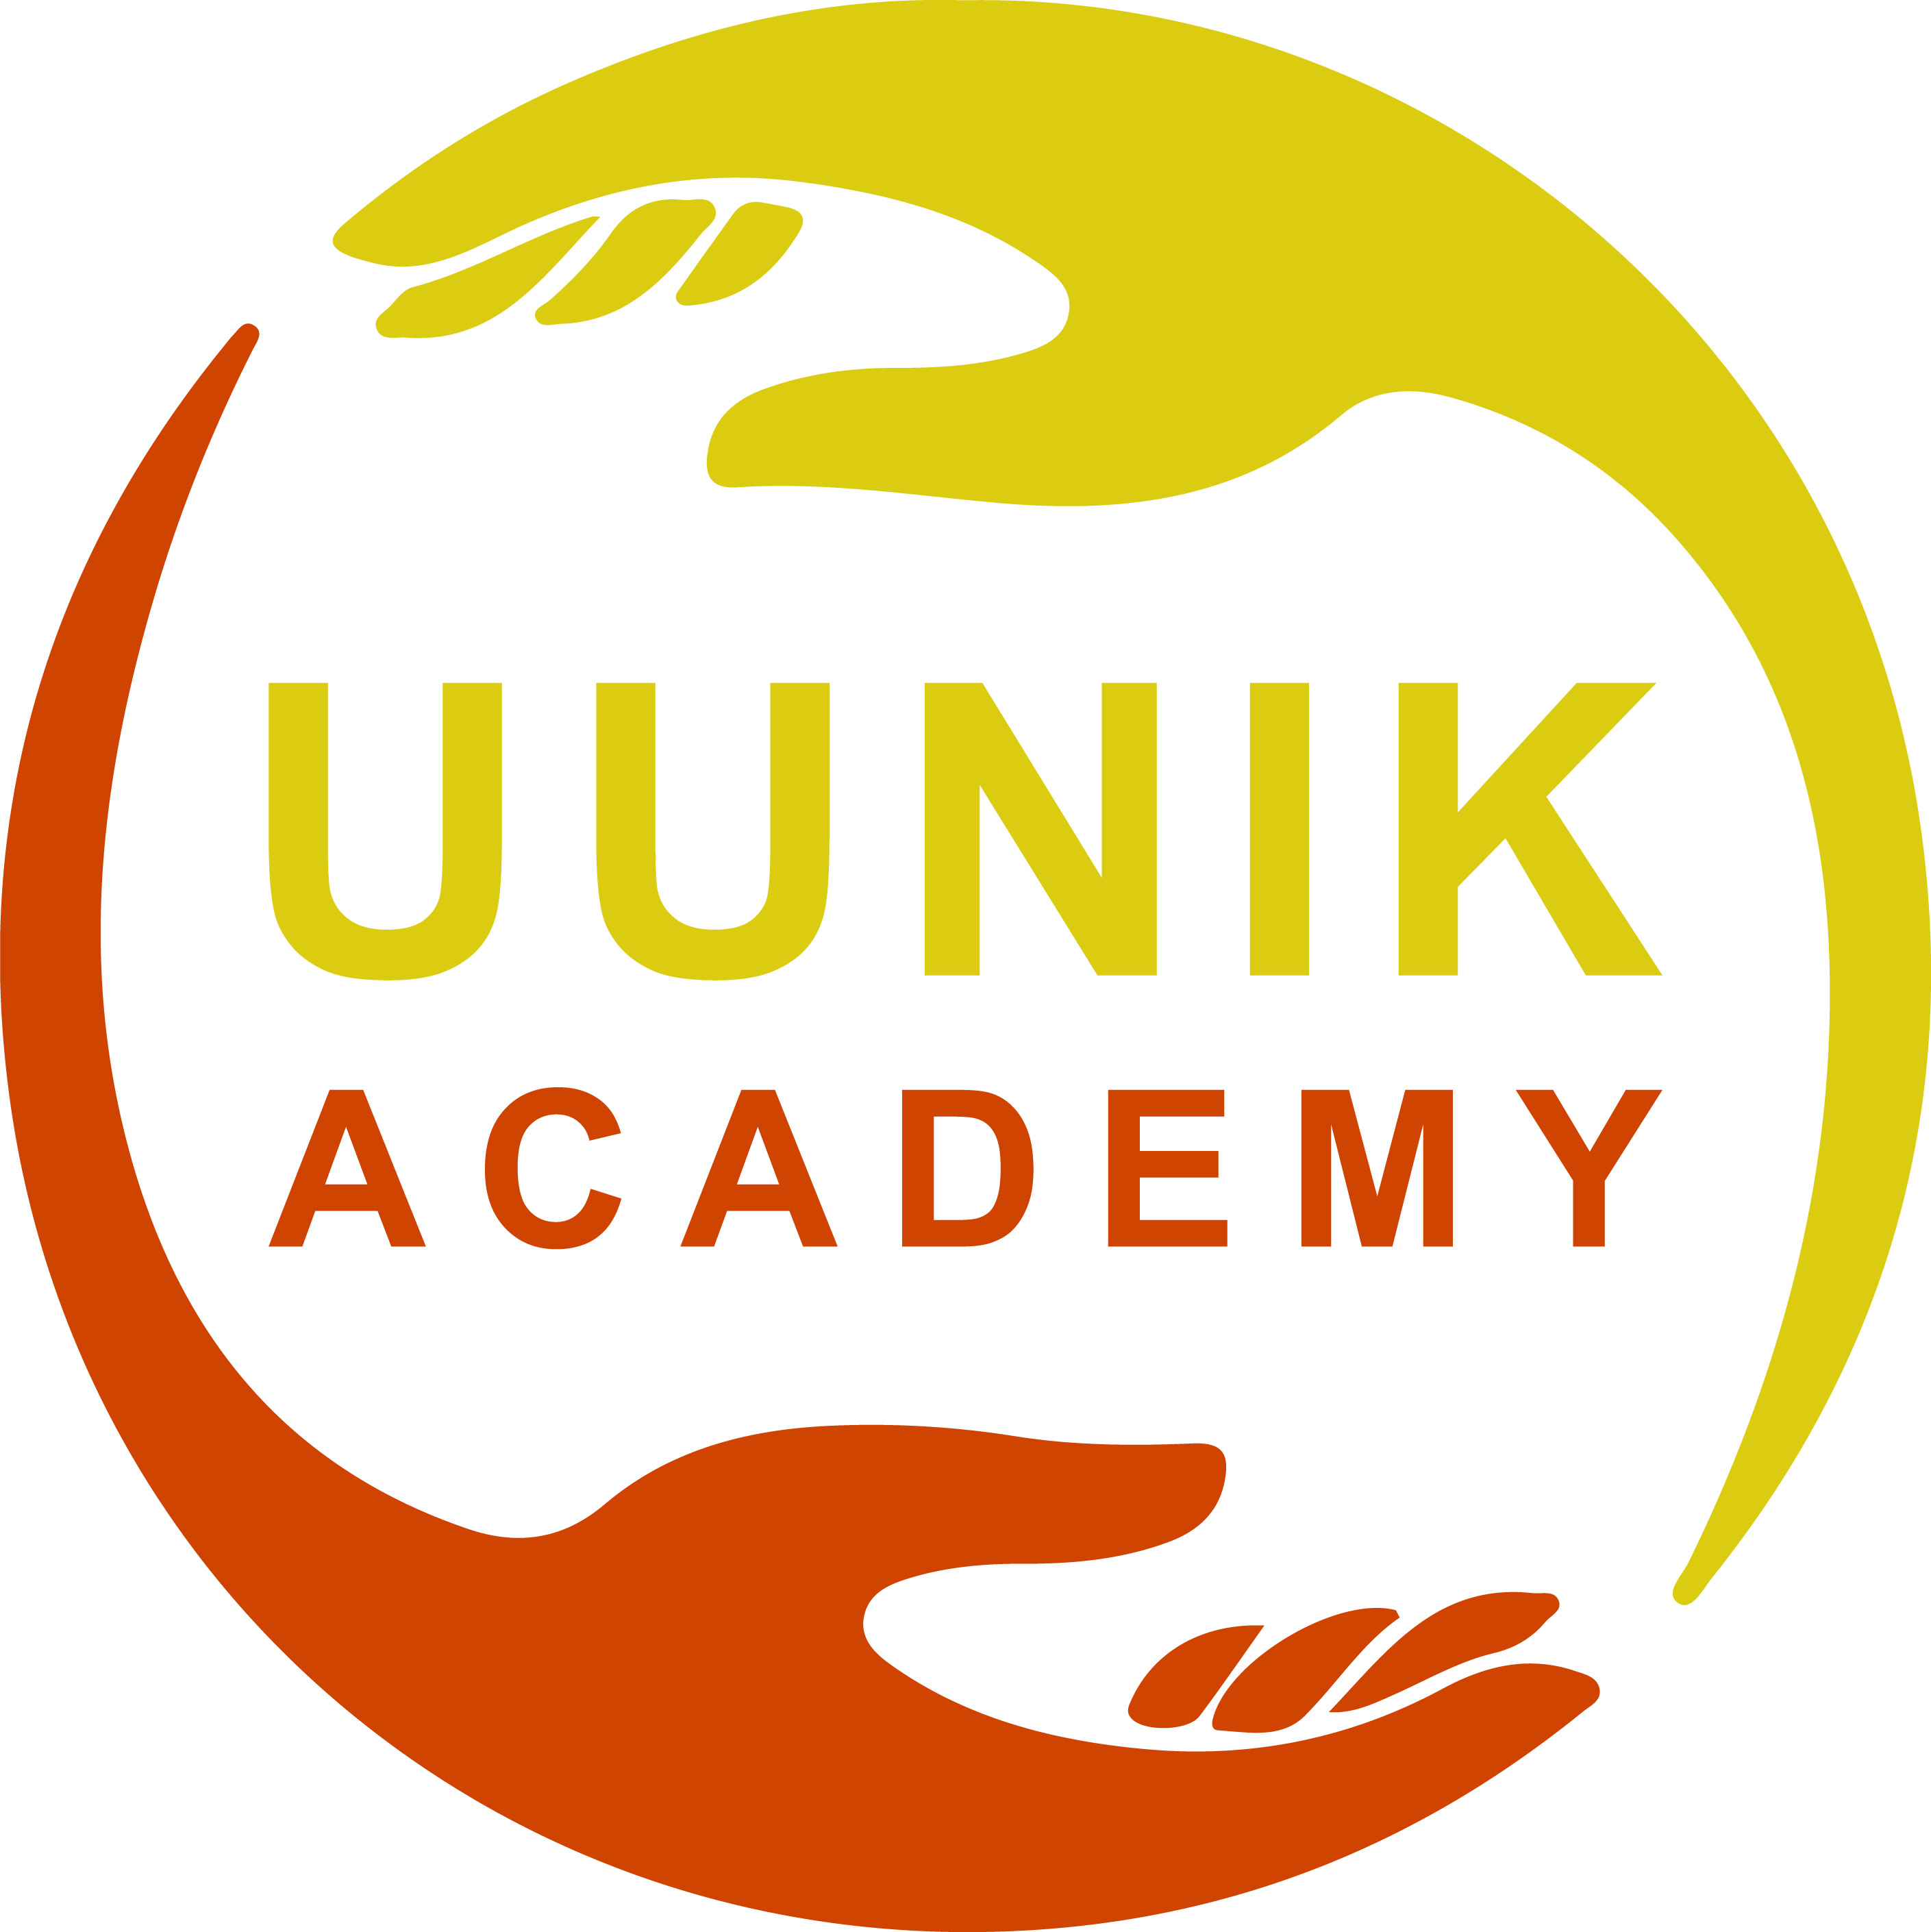 UUNIK ACADEMY logo